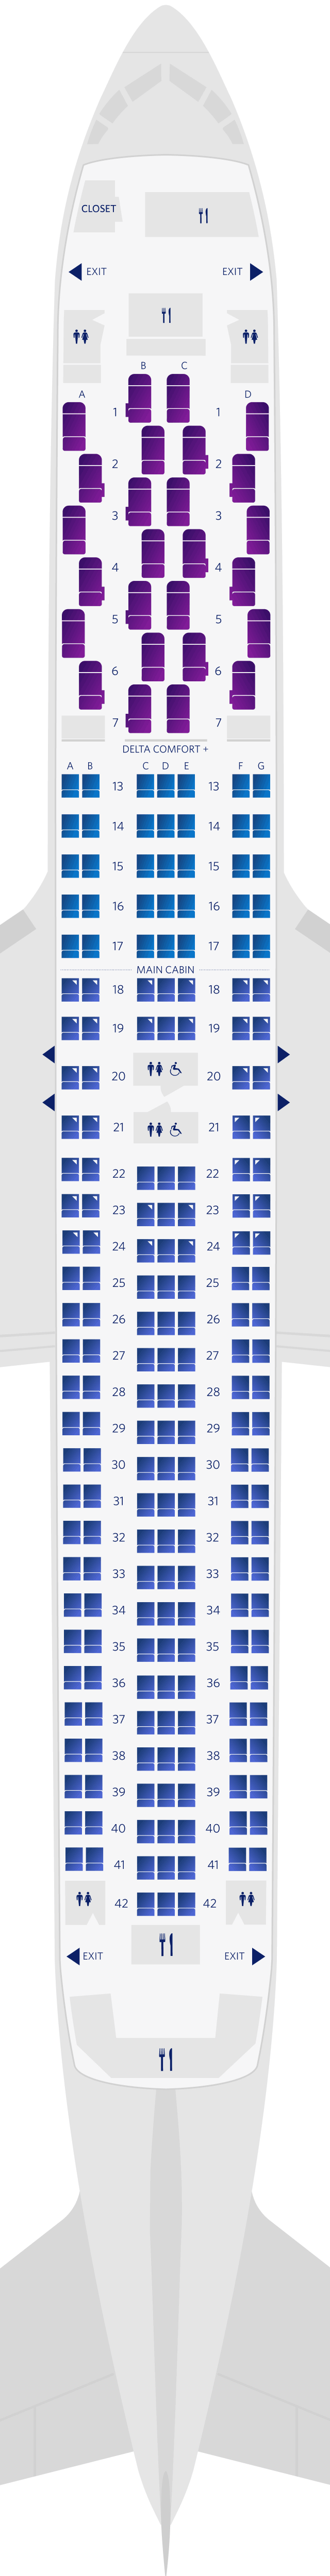 Boeing 767-300ER (76Z) Seat Map